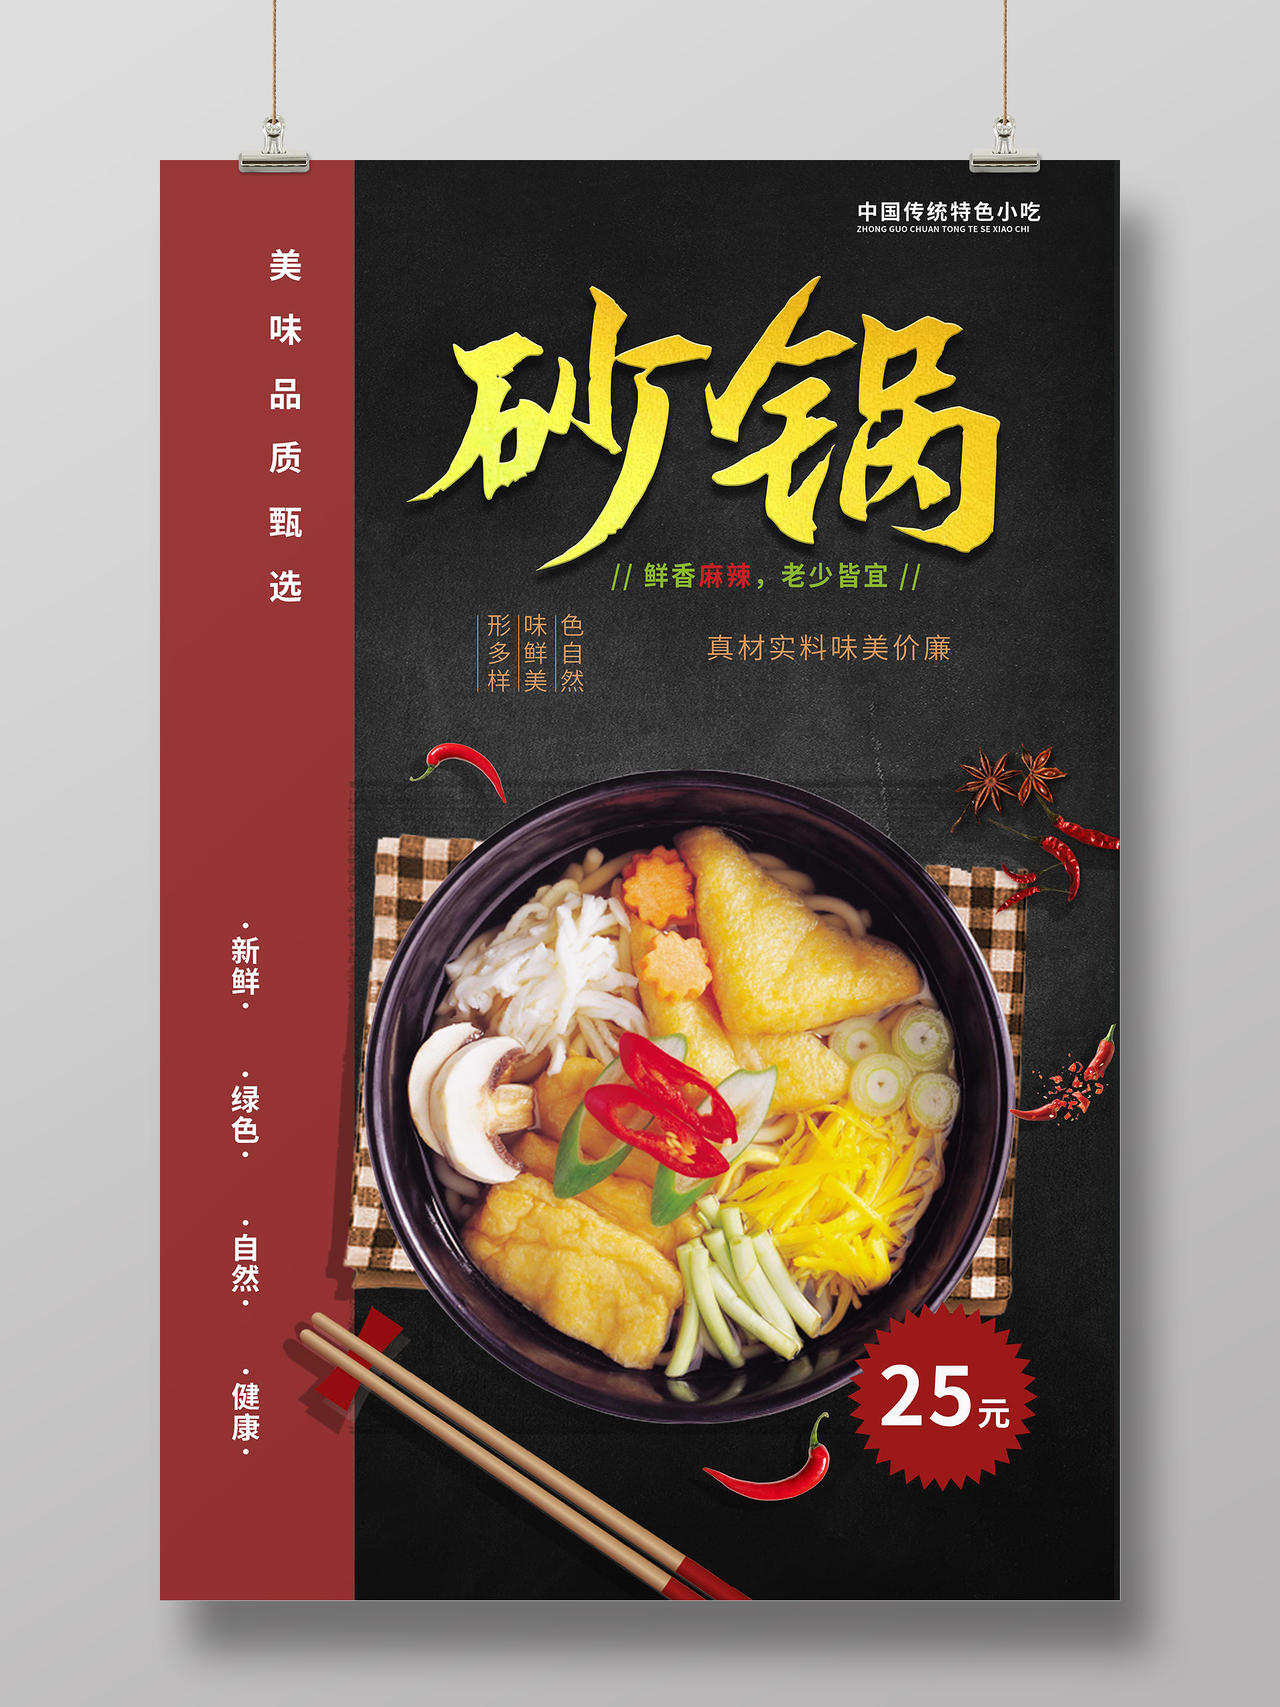 黑红色简洁大气中国传统小吃砂锅美食宣传海报砂锅粥